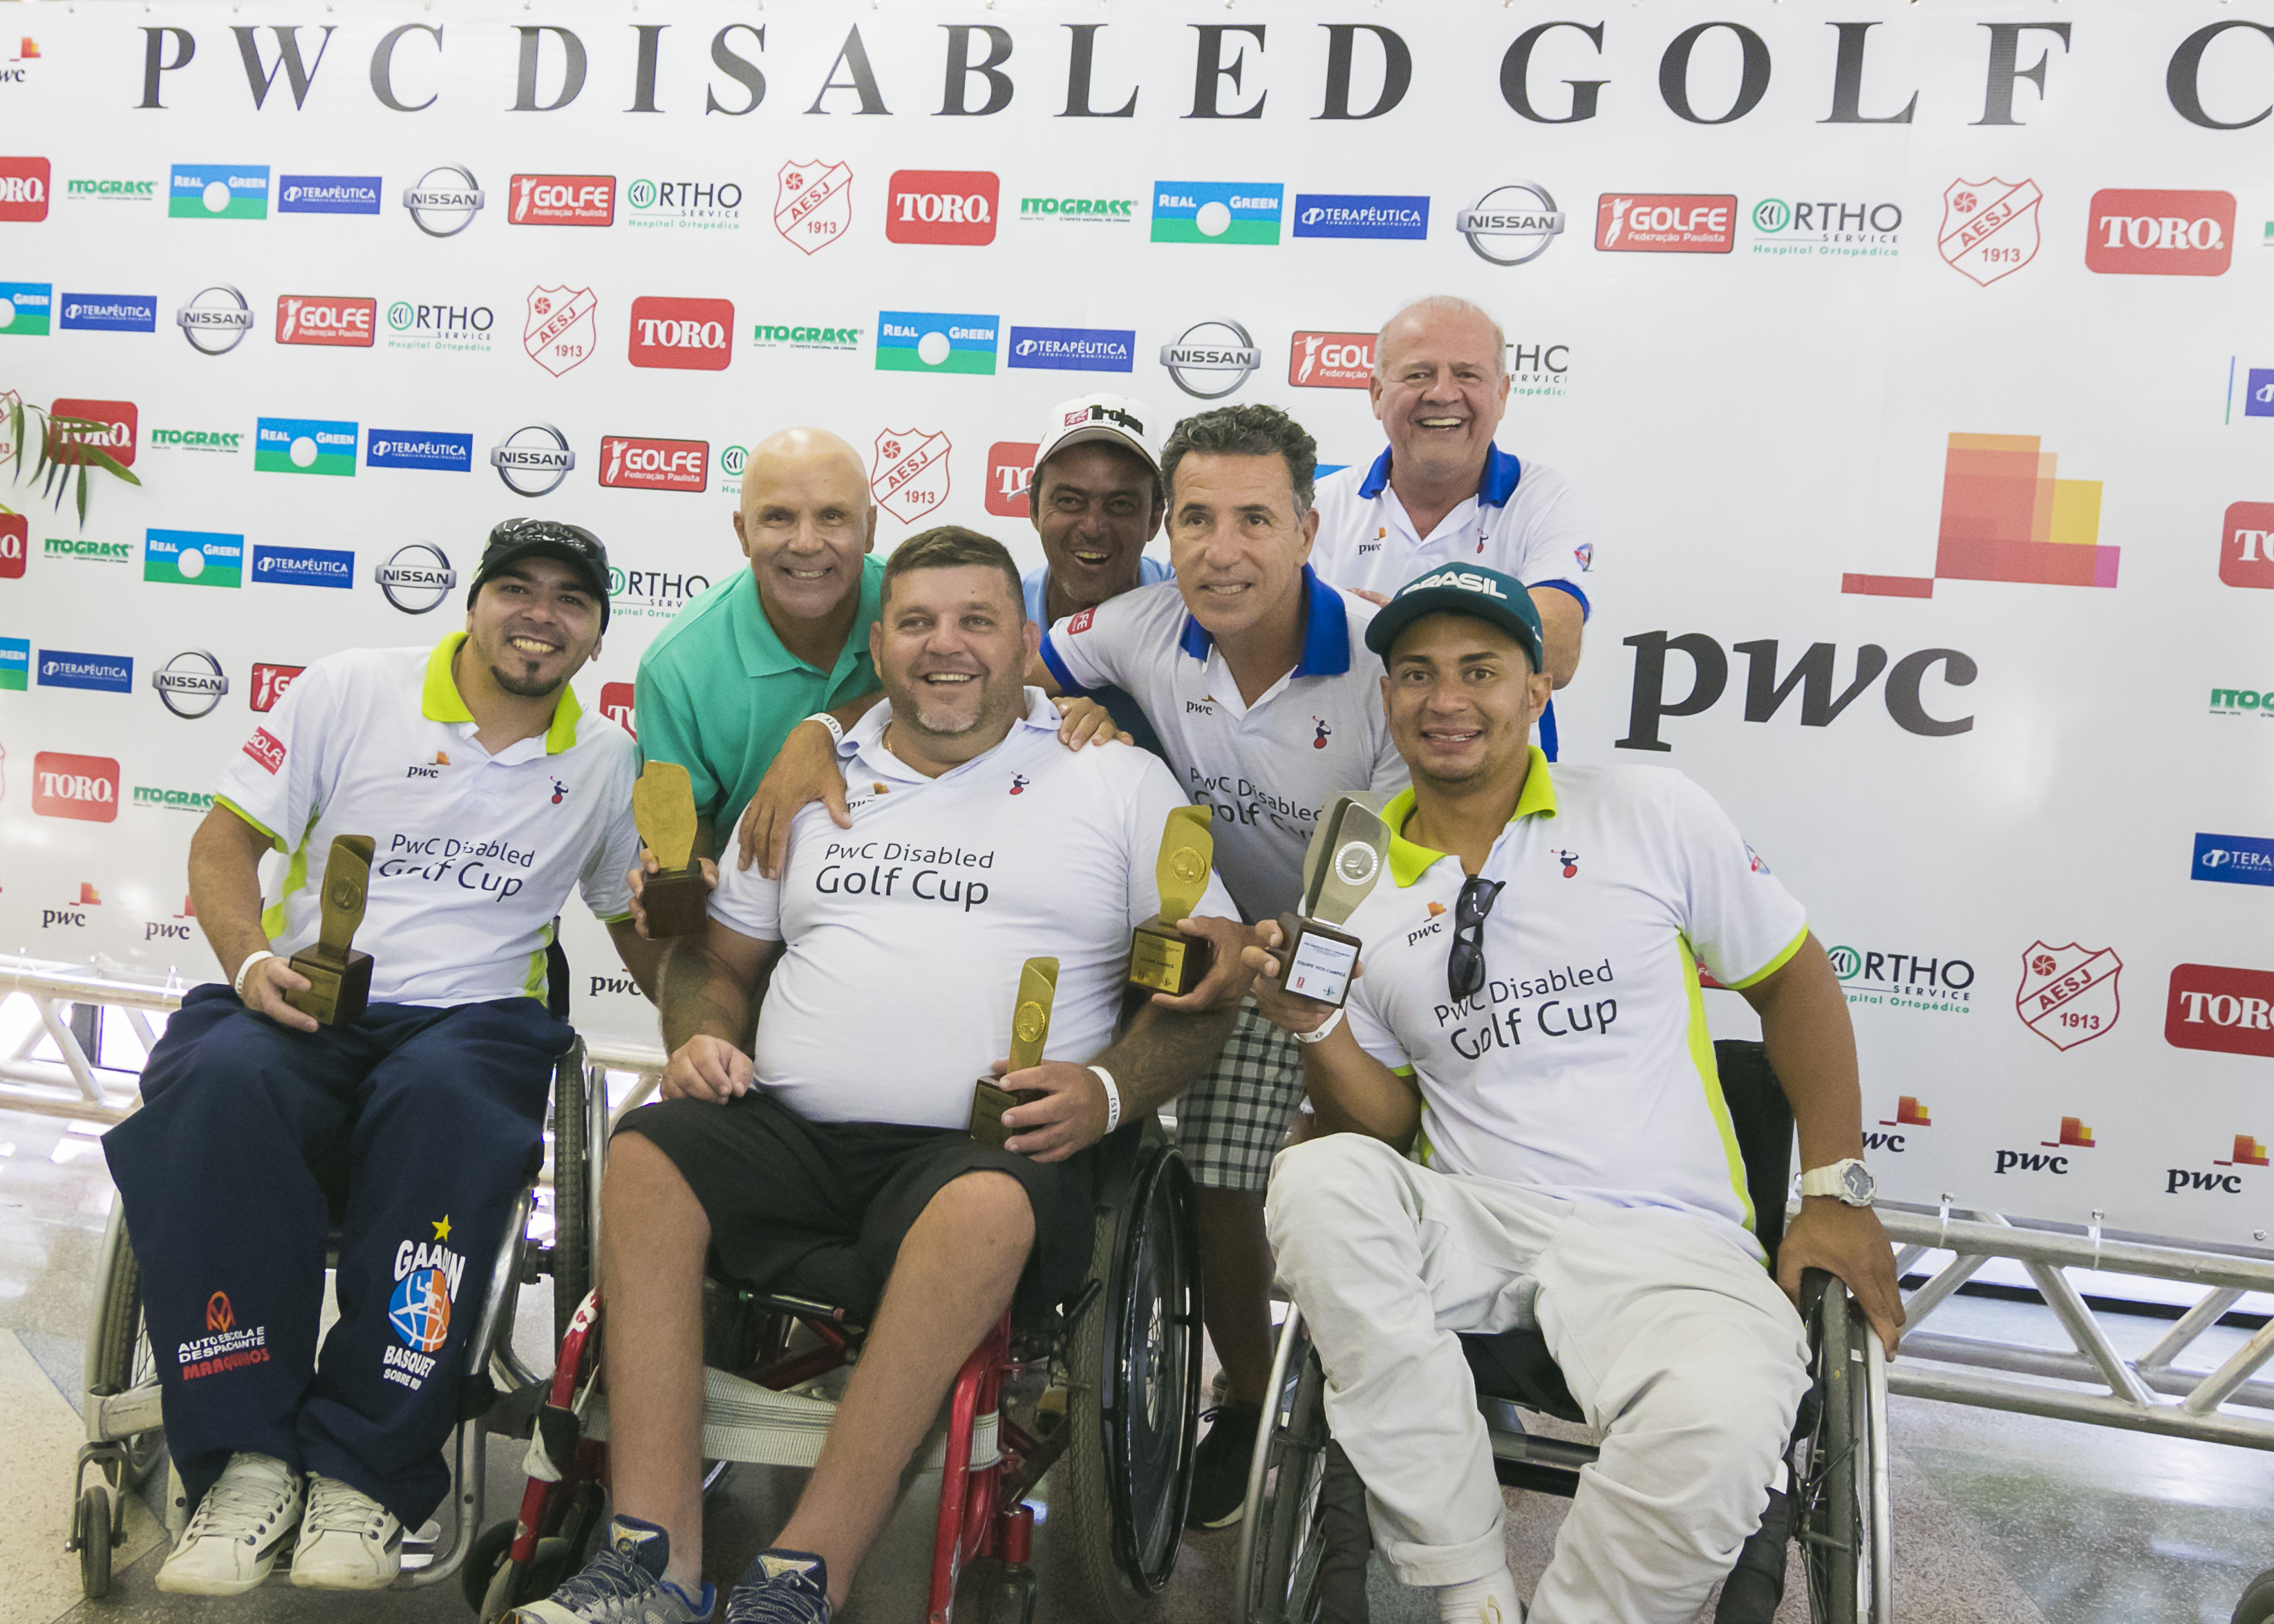 Sucesso total o “PwC DISABLED GOLF CUP -PRO AM”, 2º Torneio de Golfe Adaptado para Cadeirantes do Brasil